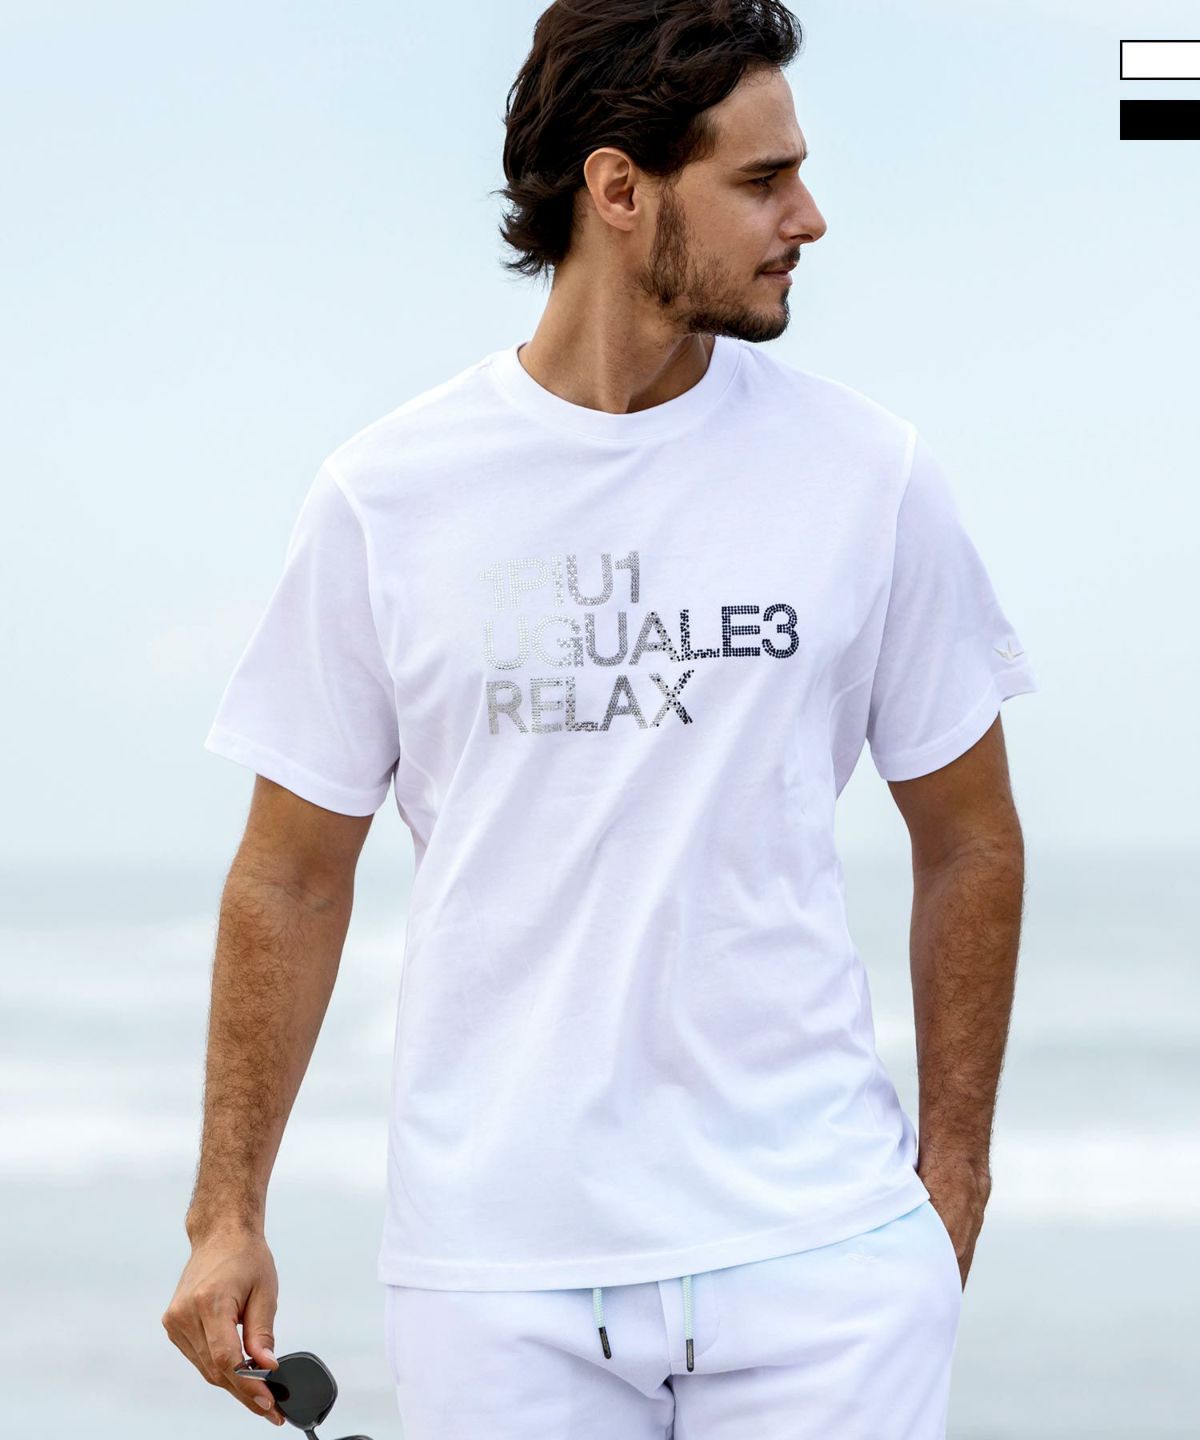 1PIU1UGUALE3 RELAX(ウノピゥウノウグァーレトレ リラックス)ラインストーンロゴ半袖Tシャツ